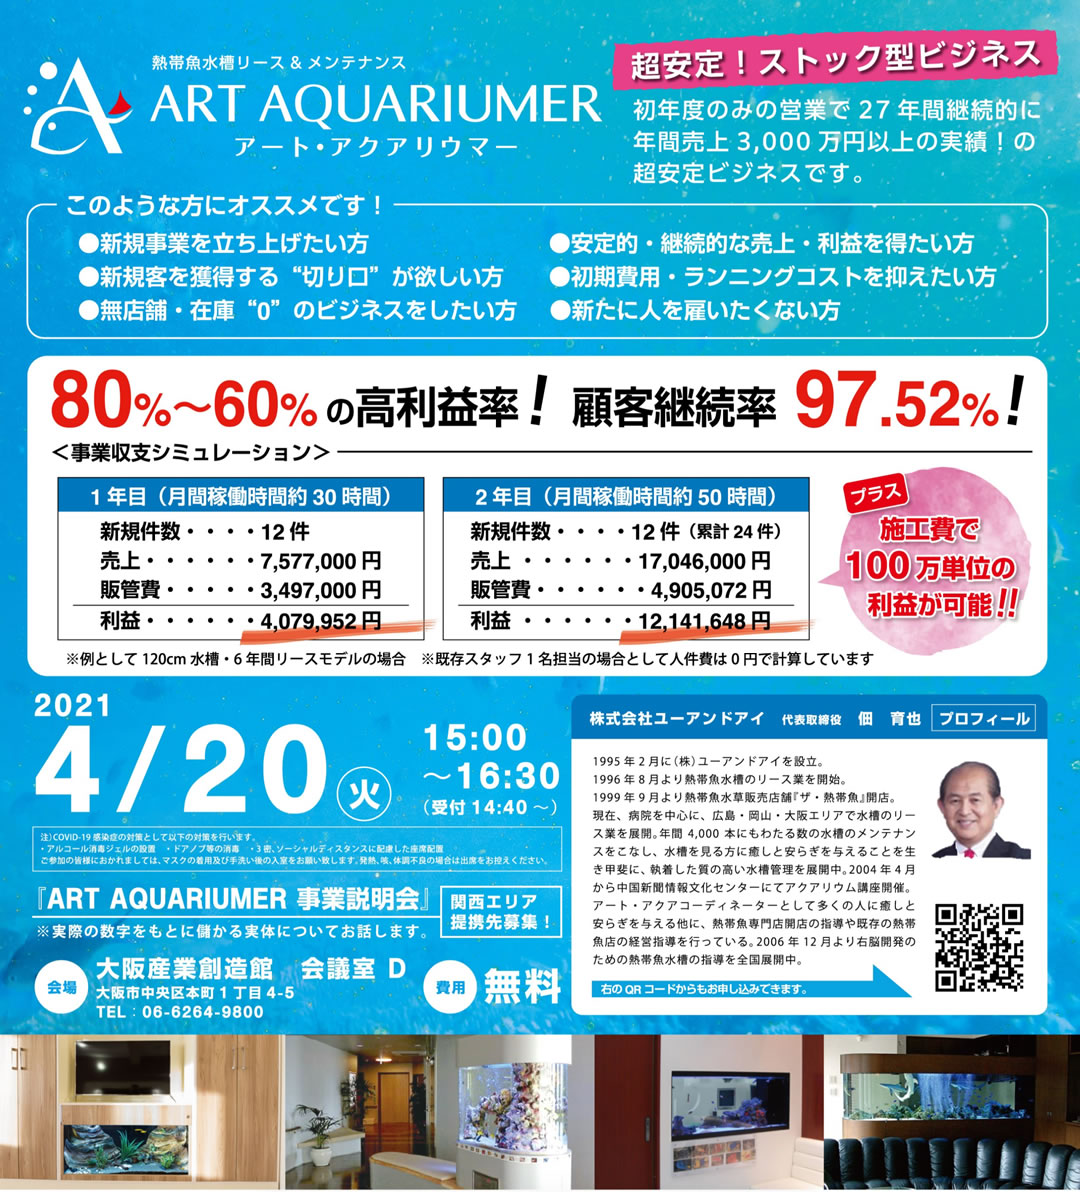 アートアクアリウマー 事業説明会 熱帯魚水槽のリース メンテナンス ザ熱帯魚